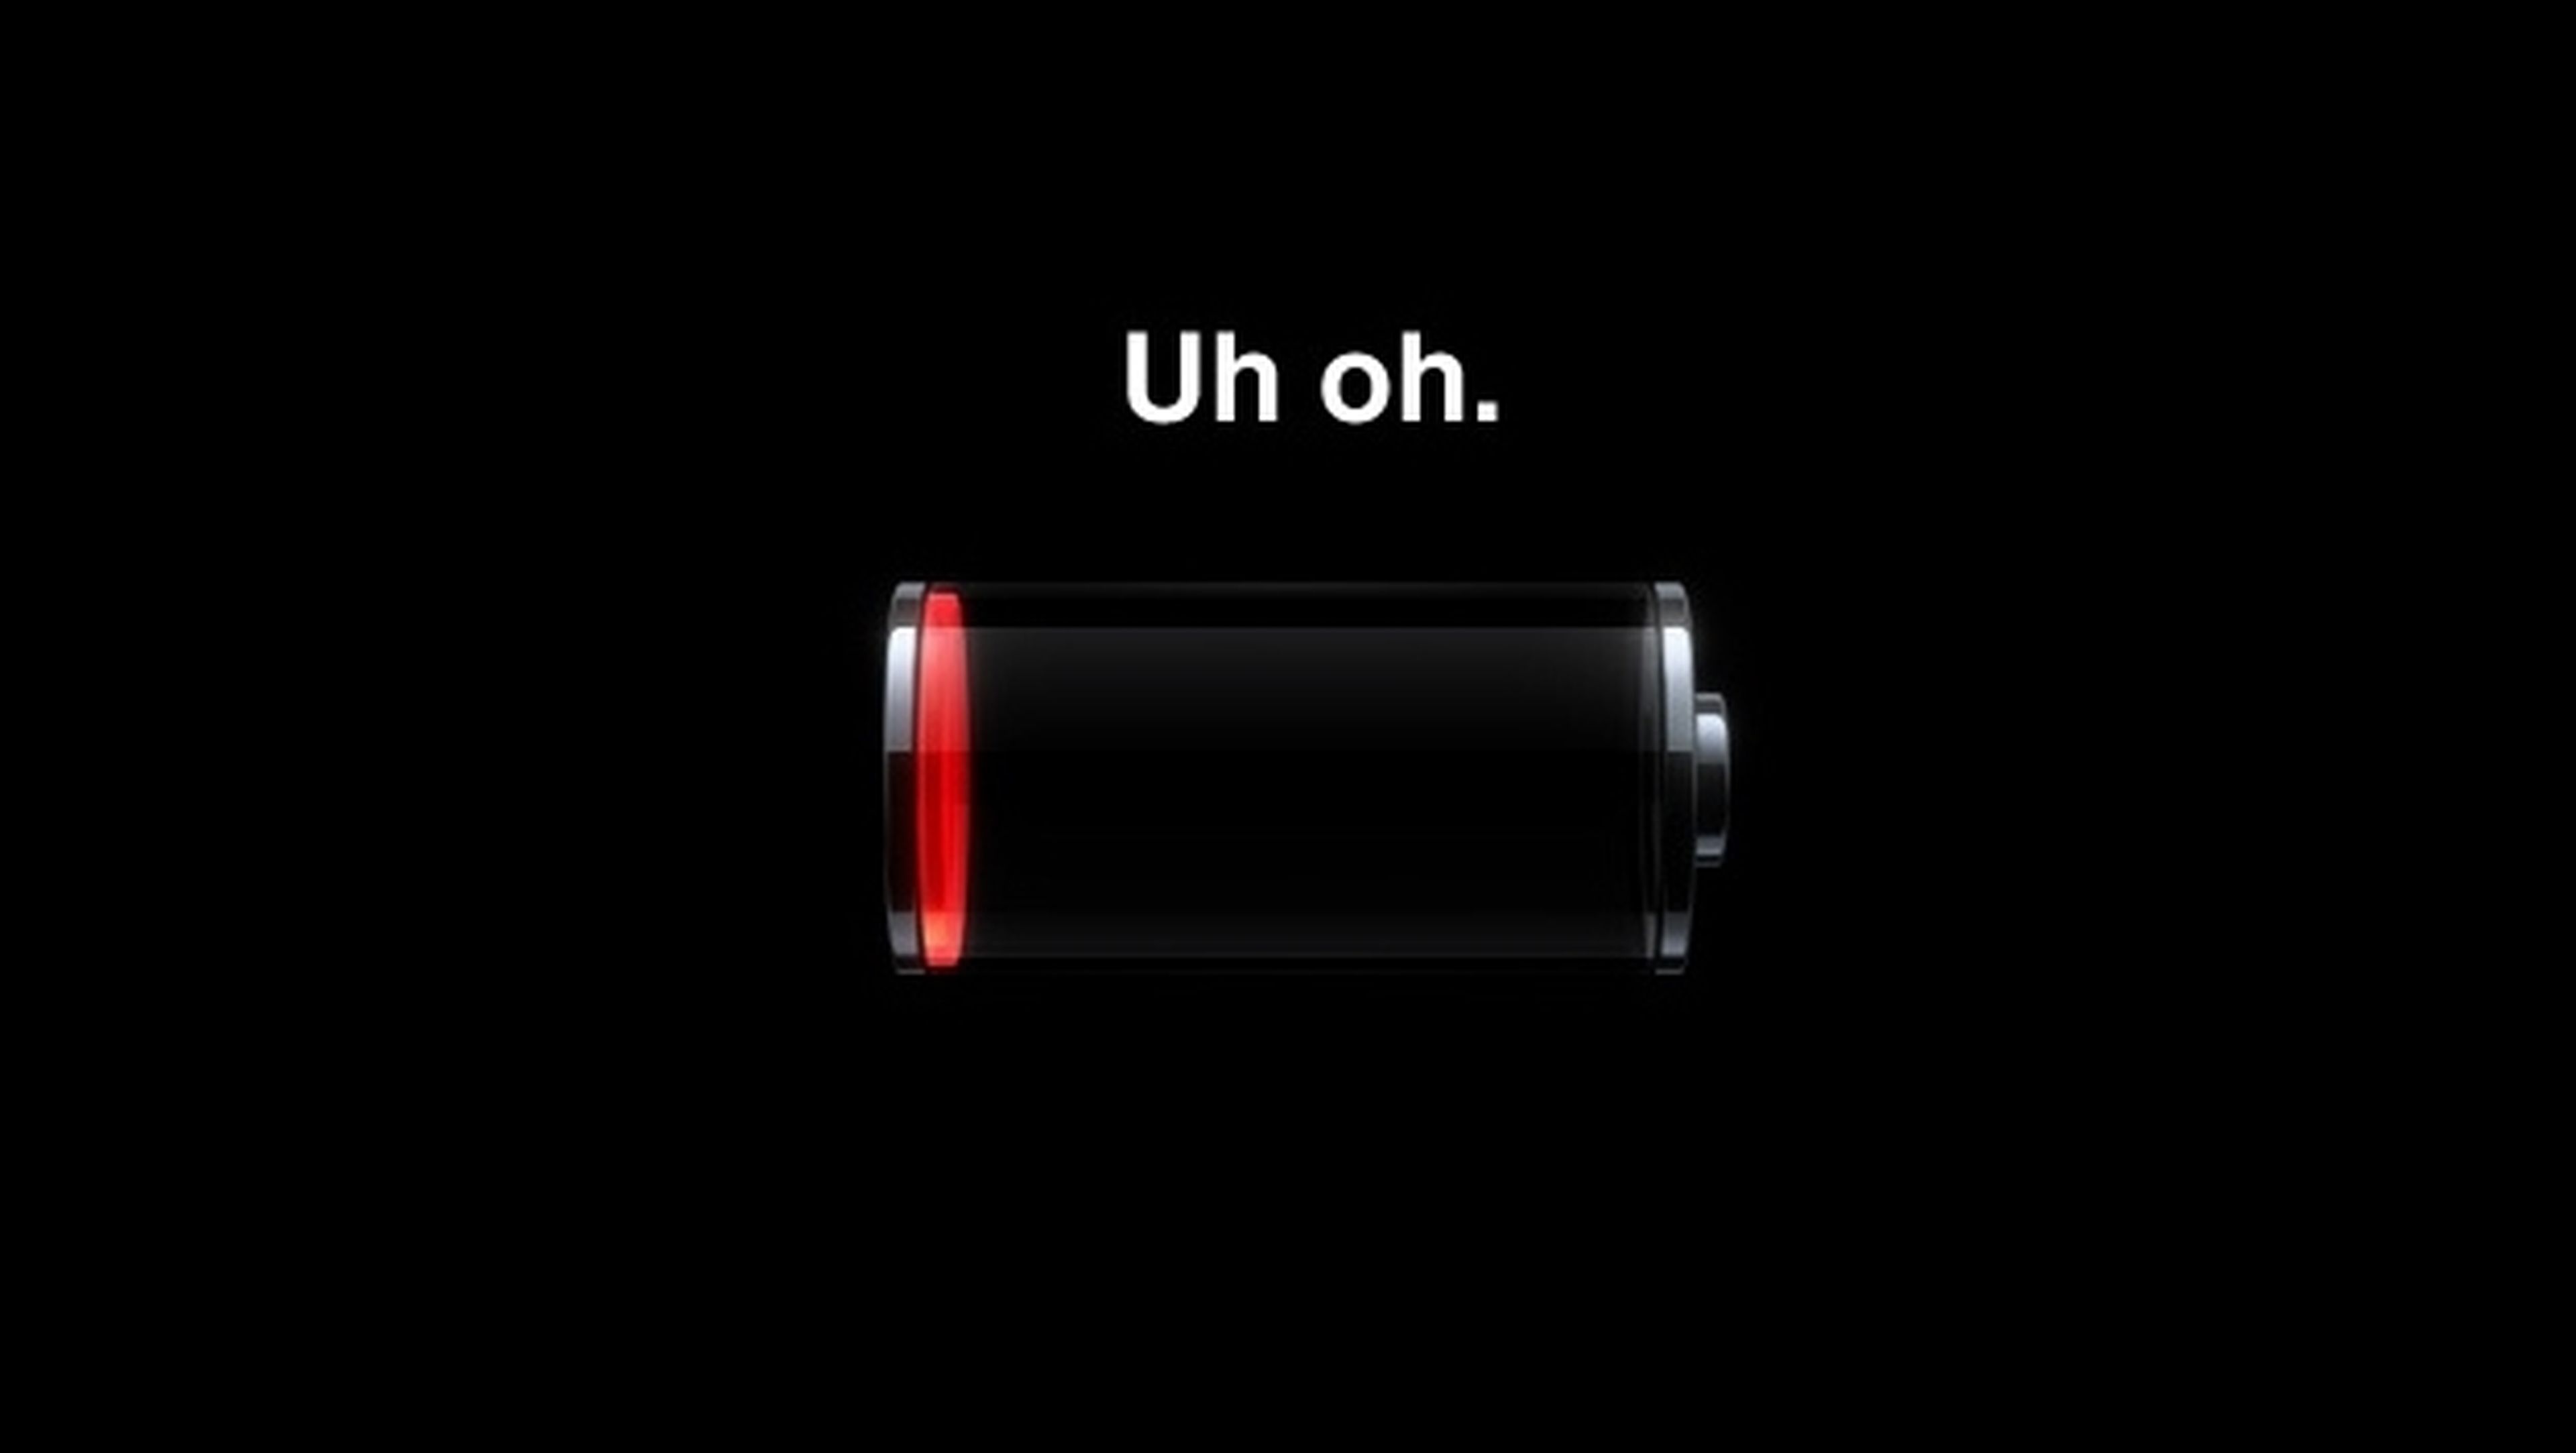 La actualización iOS 7.1 consume mucha batería. ¿Bug o mayores exigencias del sistema?